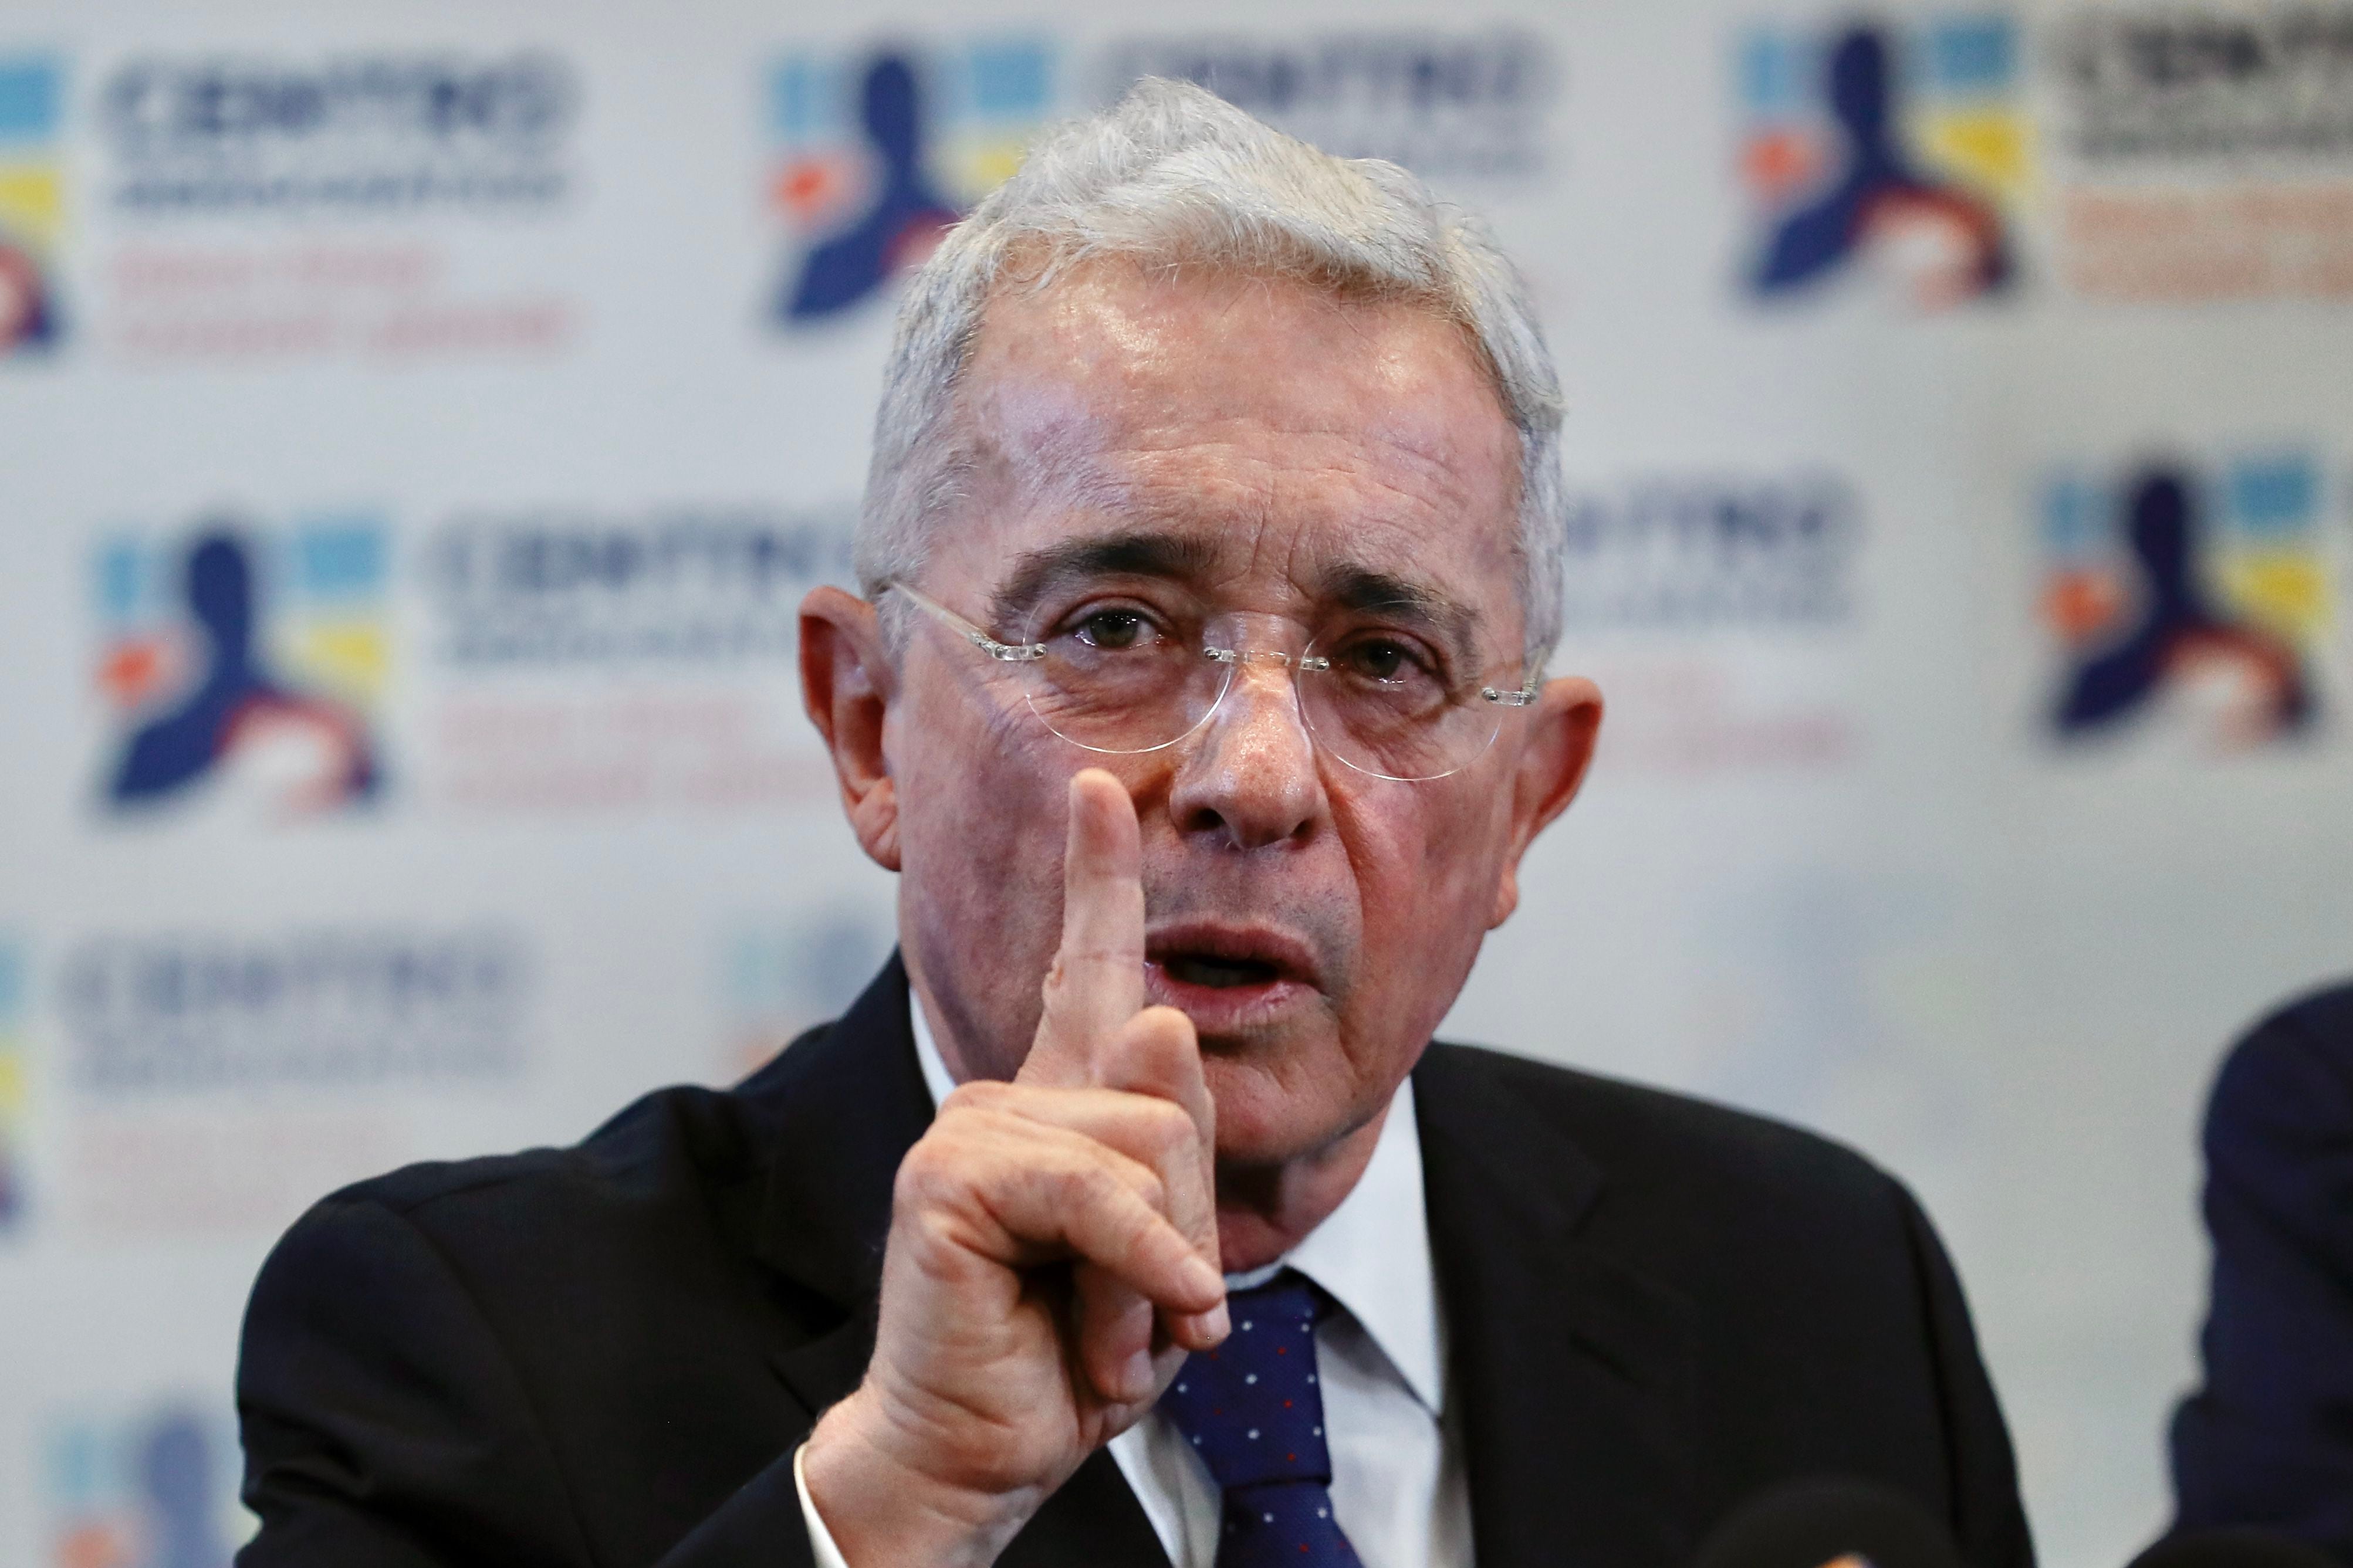 “Es una venganza política”: Álvaro Uribe sobre llamado a juicio de la Fiscalía